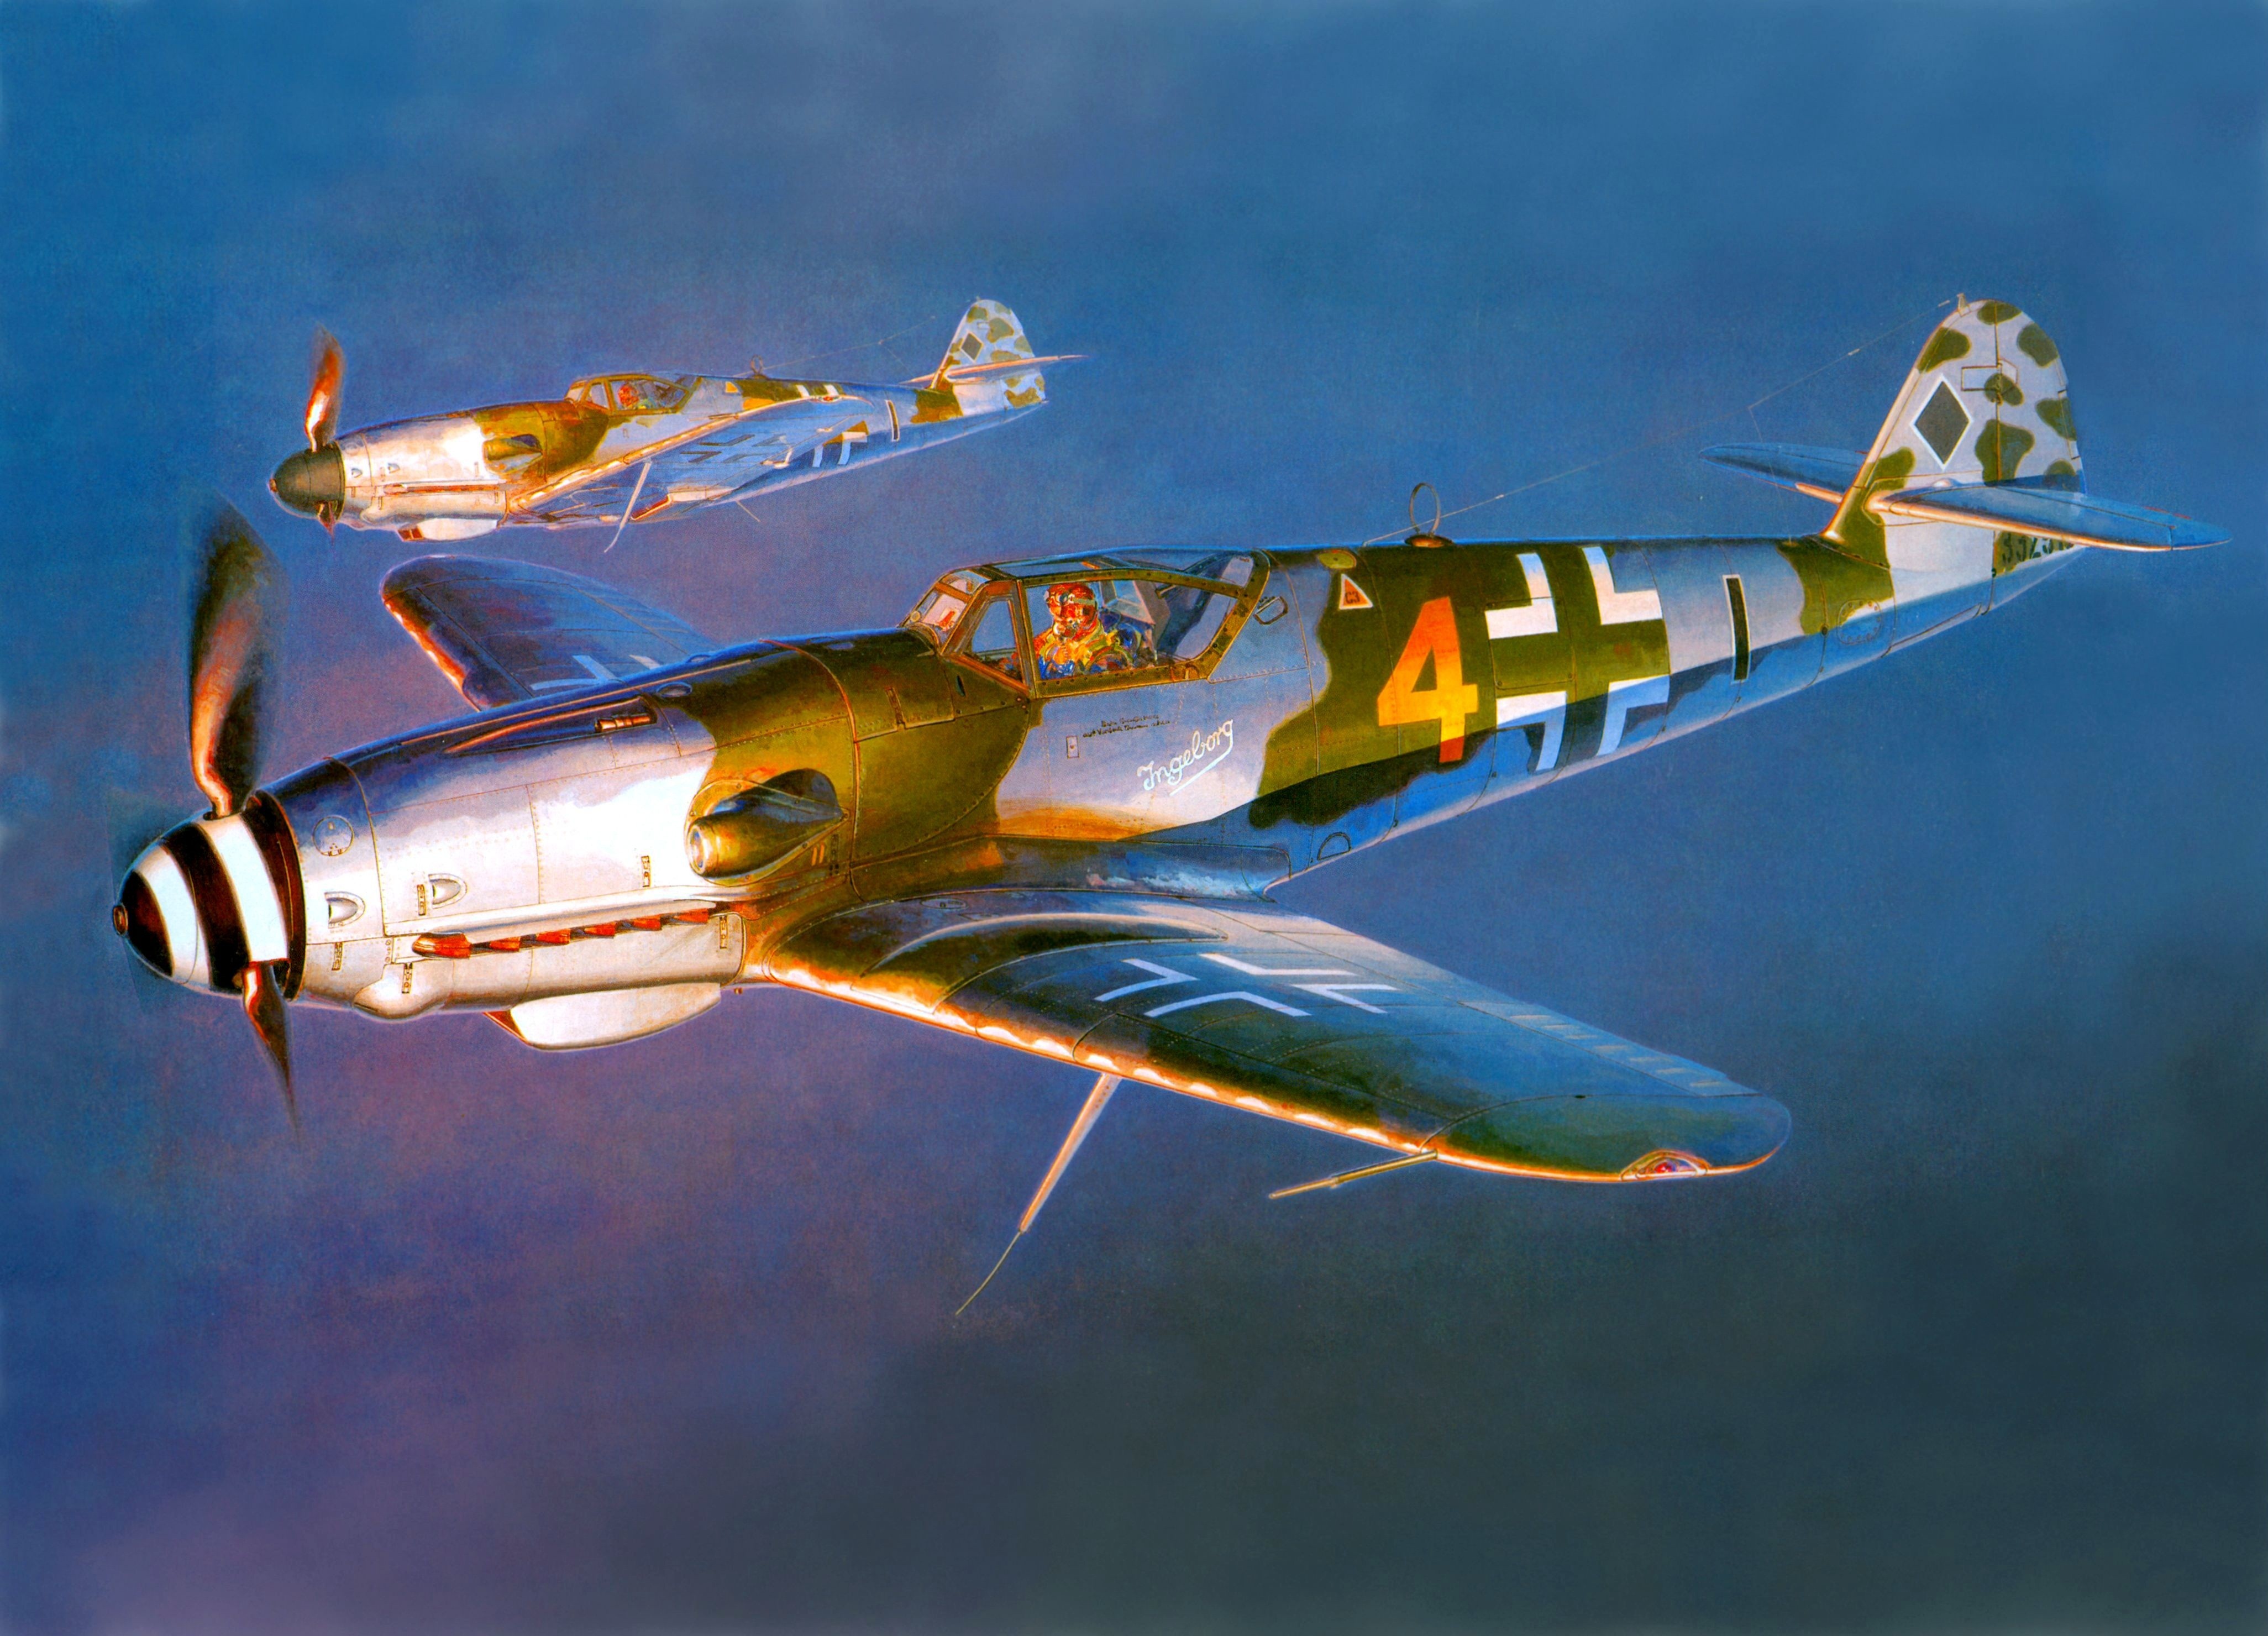 messerschmitt-messerschmitt-bf-109-world-war-ii-germany-military